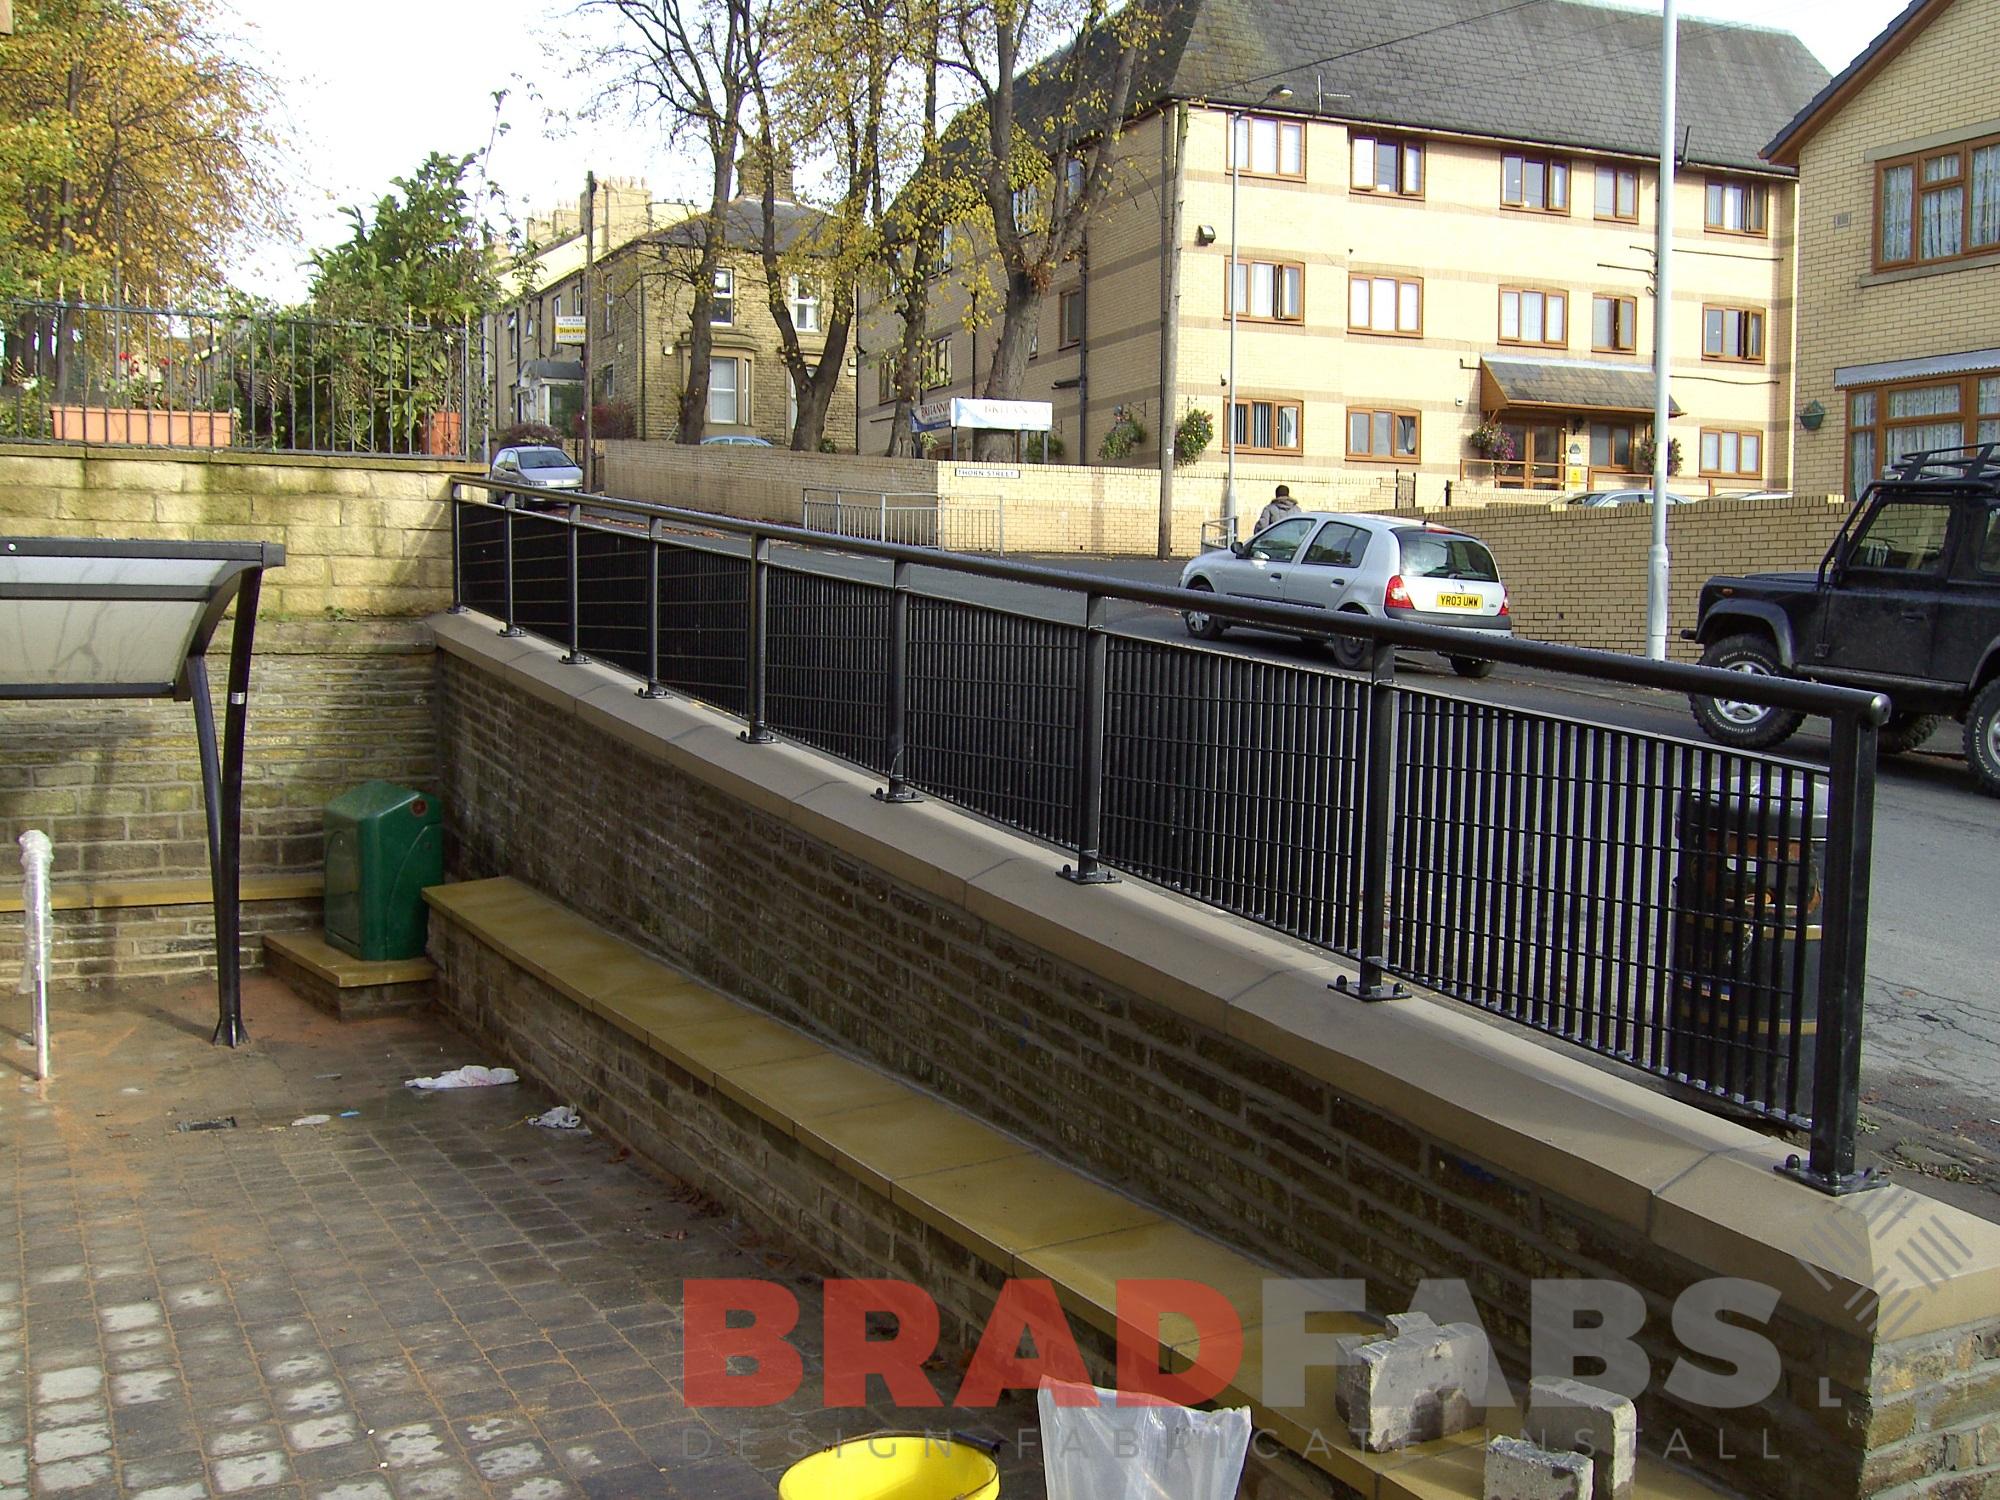 Wall mounted black steel railings installed by Bradfabs